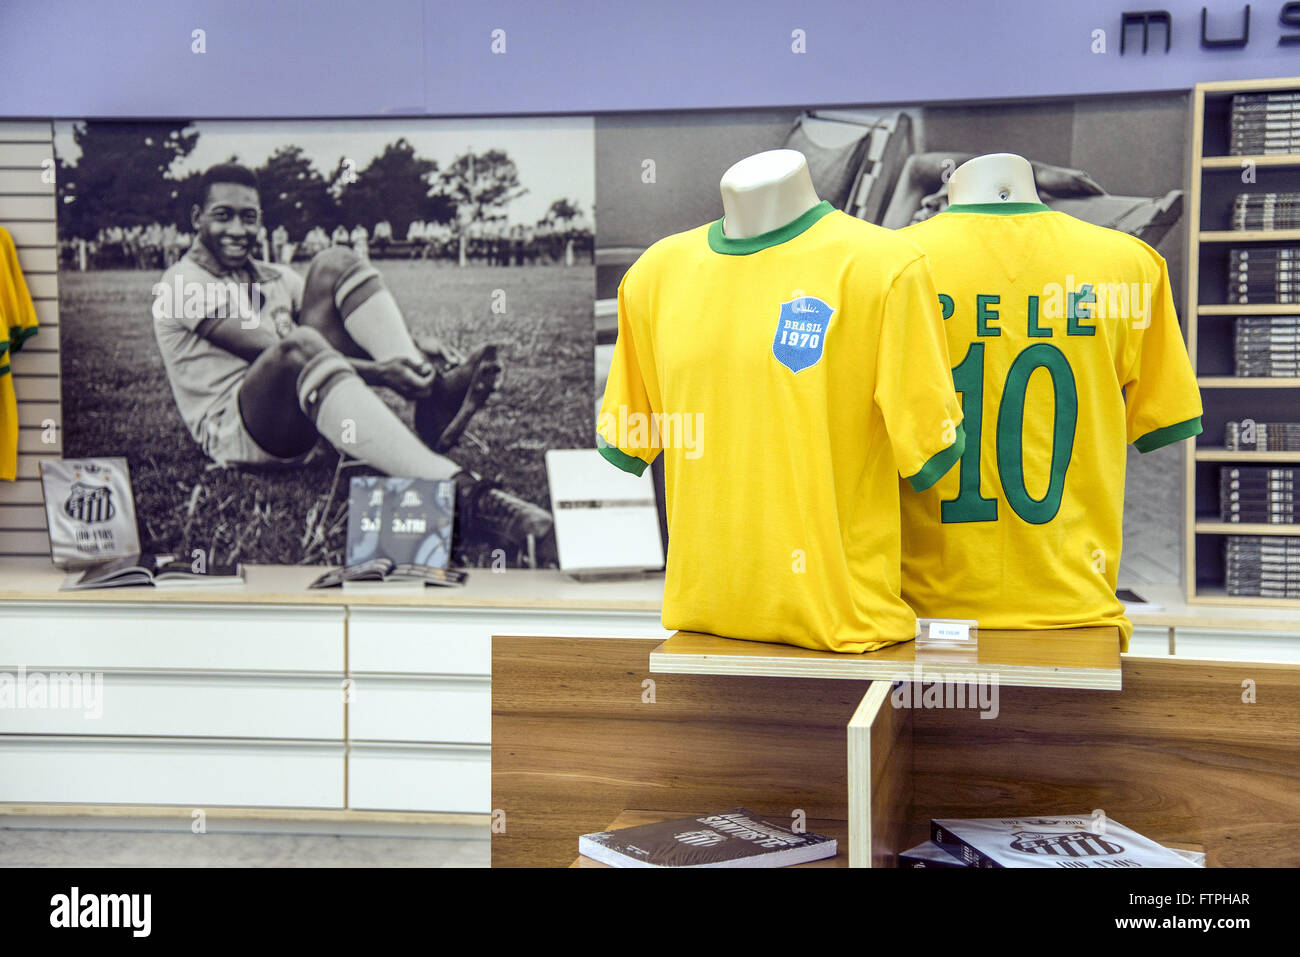 Negozio con prodotti in onore del giocatore di calcio Pele - Interno museo della pelle Foto Stock